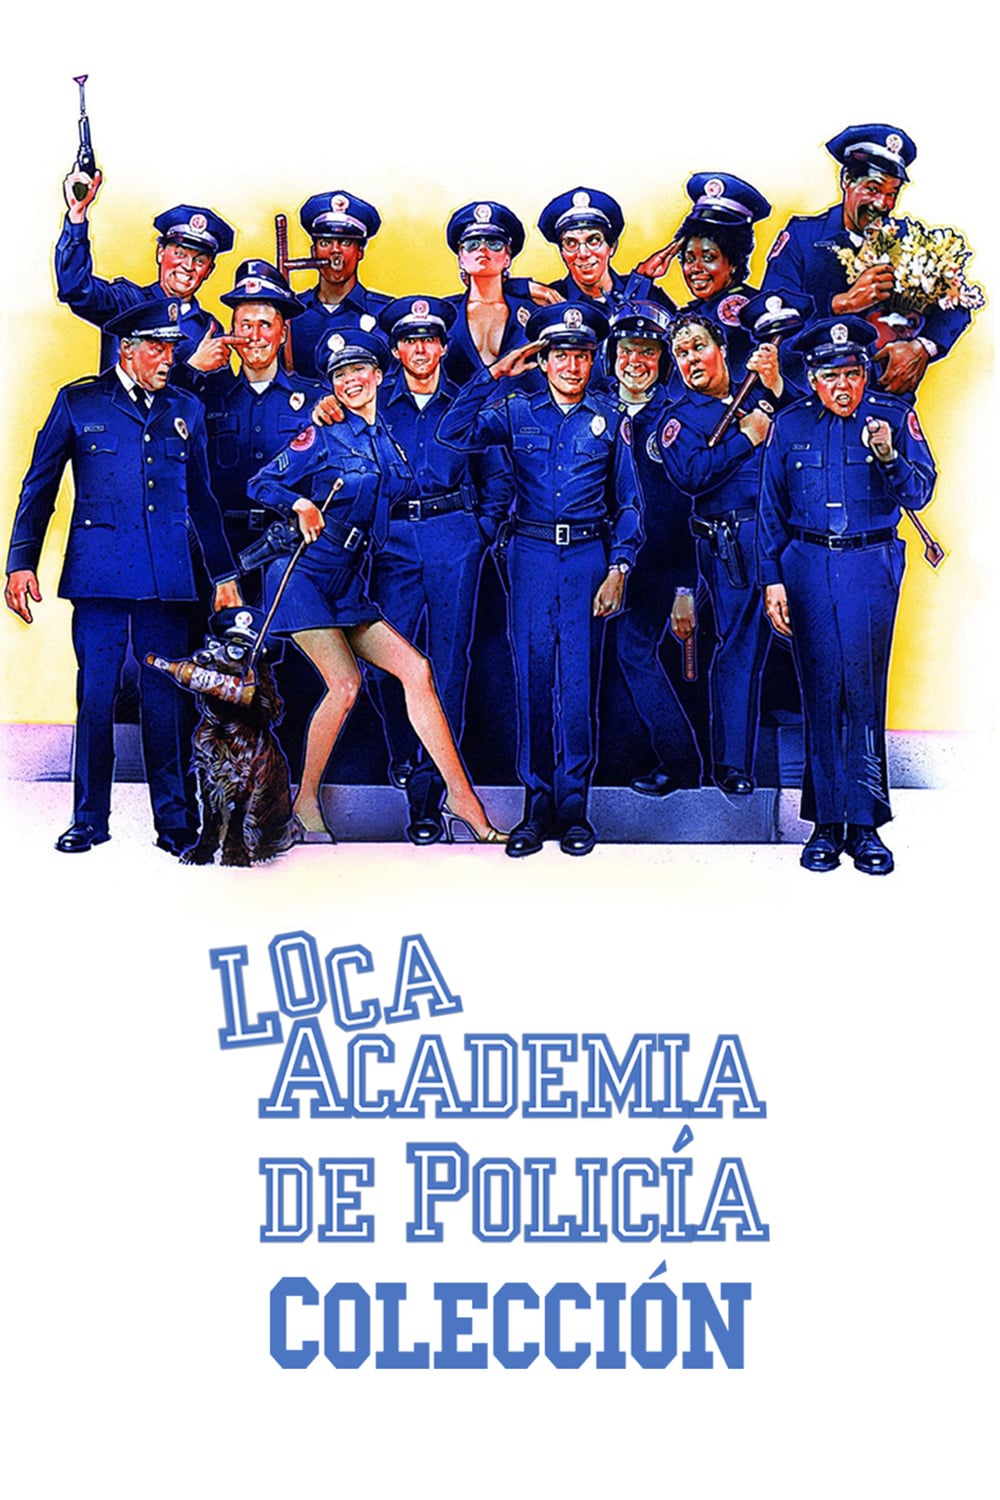 Полицейская академия